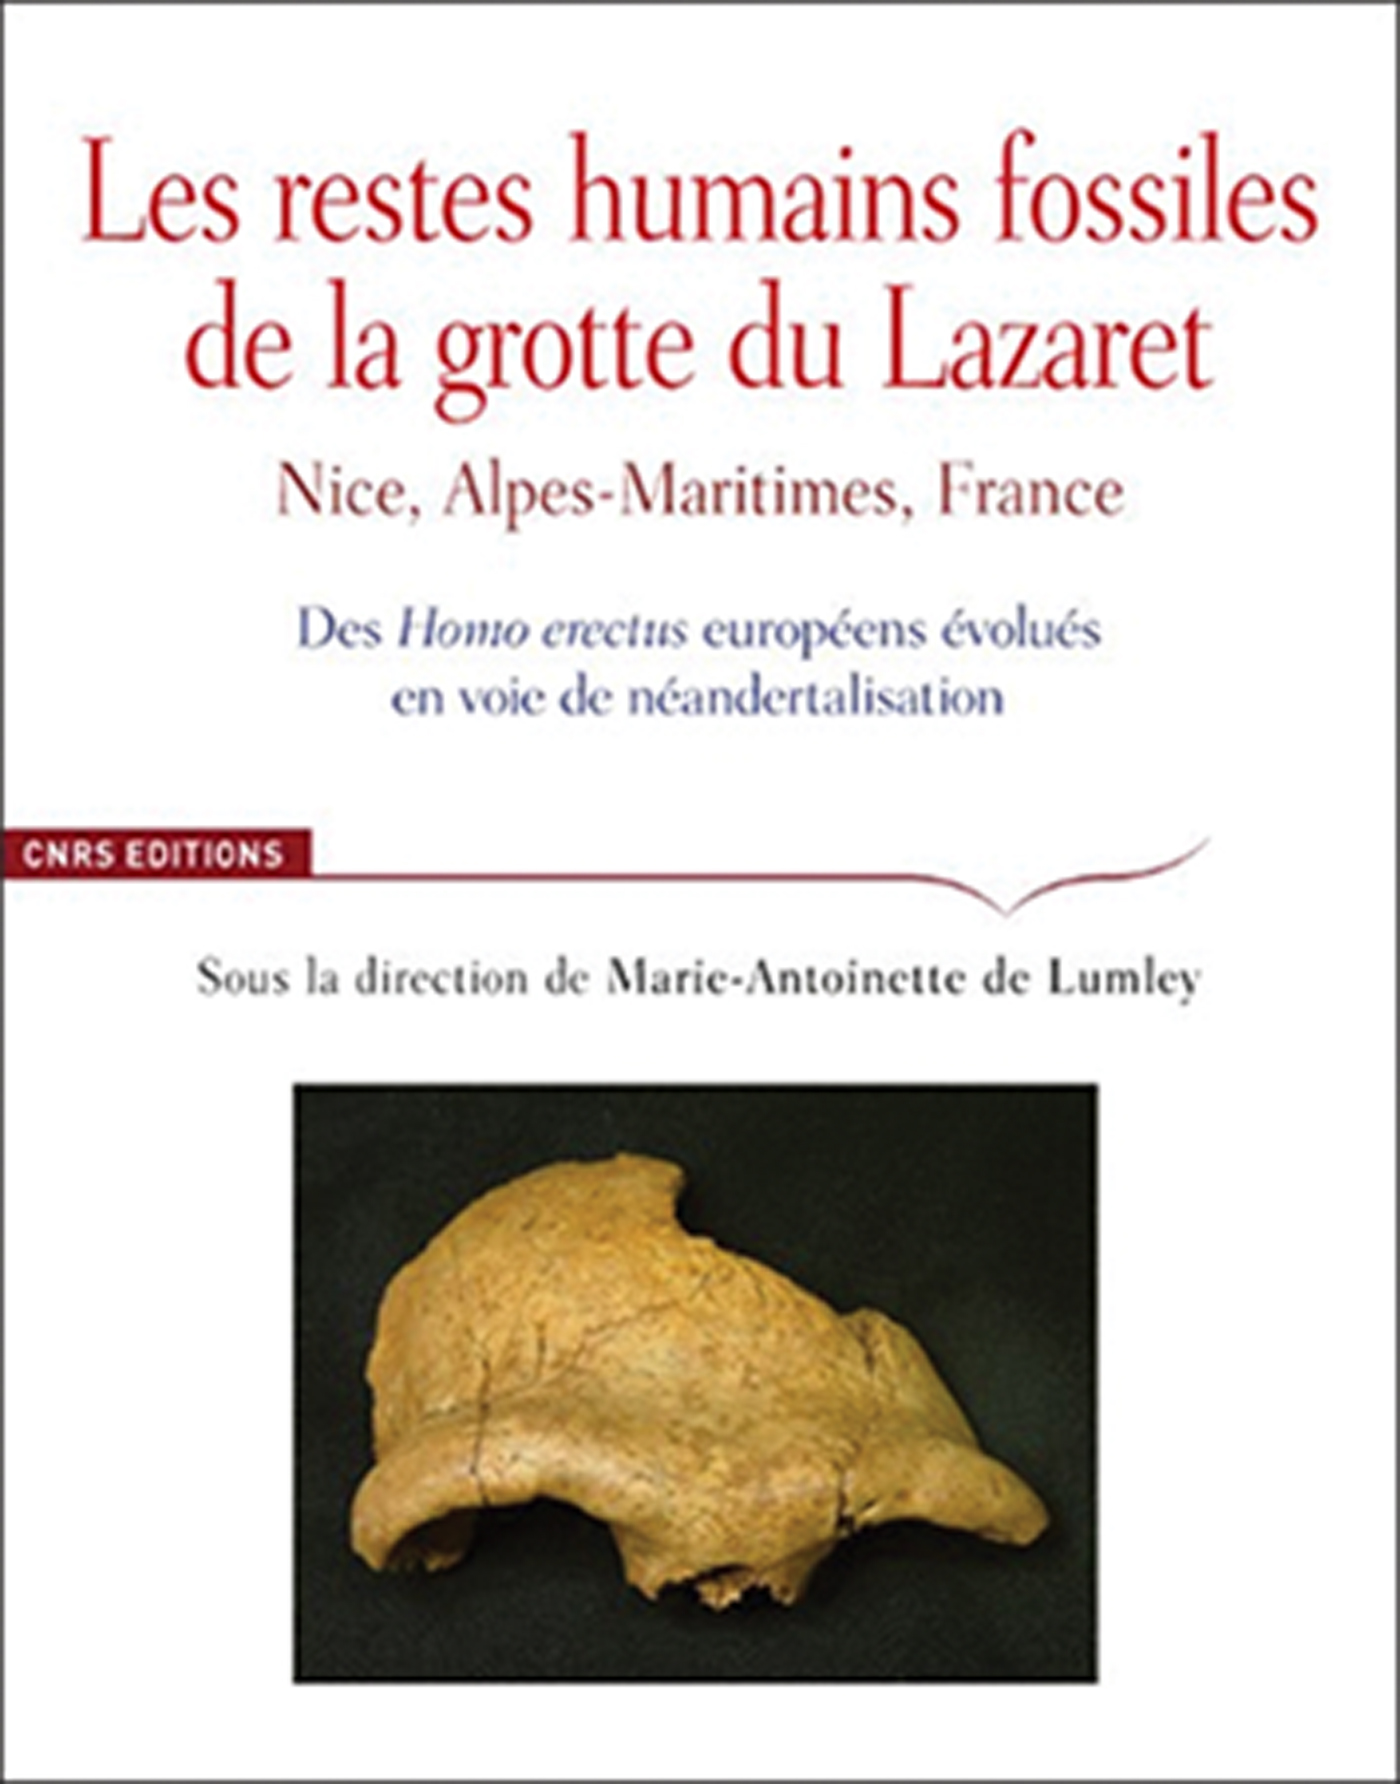 Marie Antoinette De Lumley Ed Les Restes Humains Fossiles De La Grotte Du Lazaret 18 Paris Cnrs 978 2 271 118 2 80 Antiquity Cambridge Core